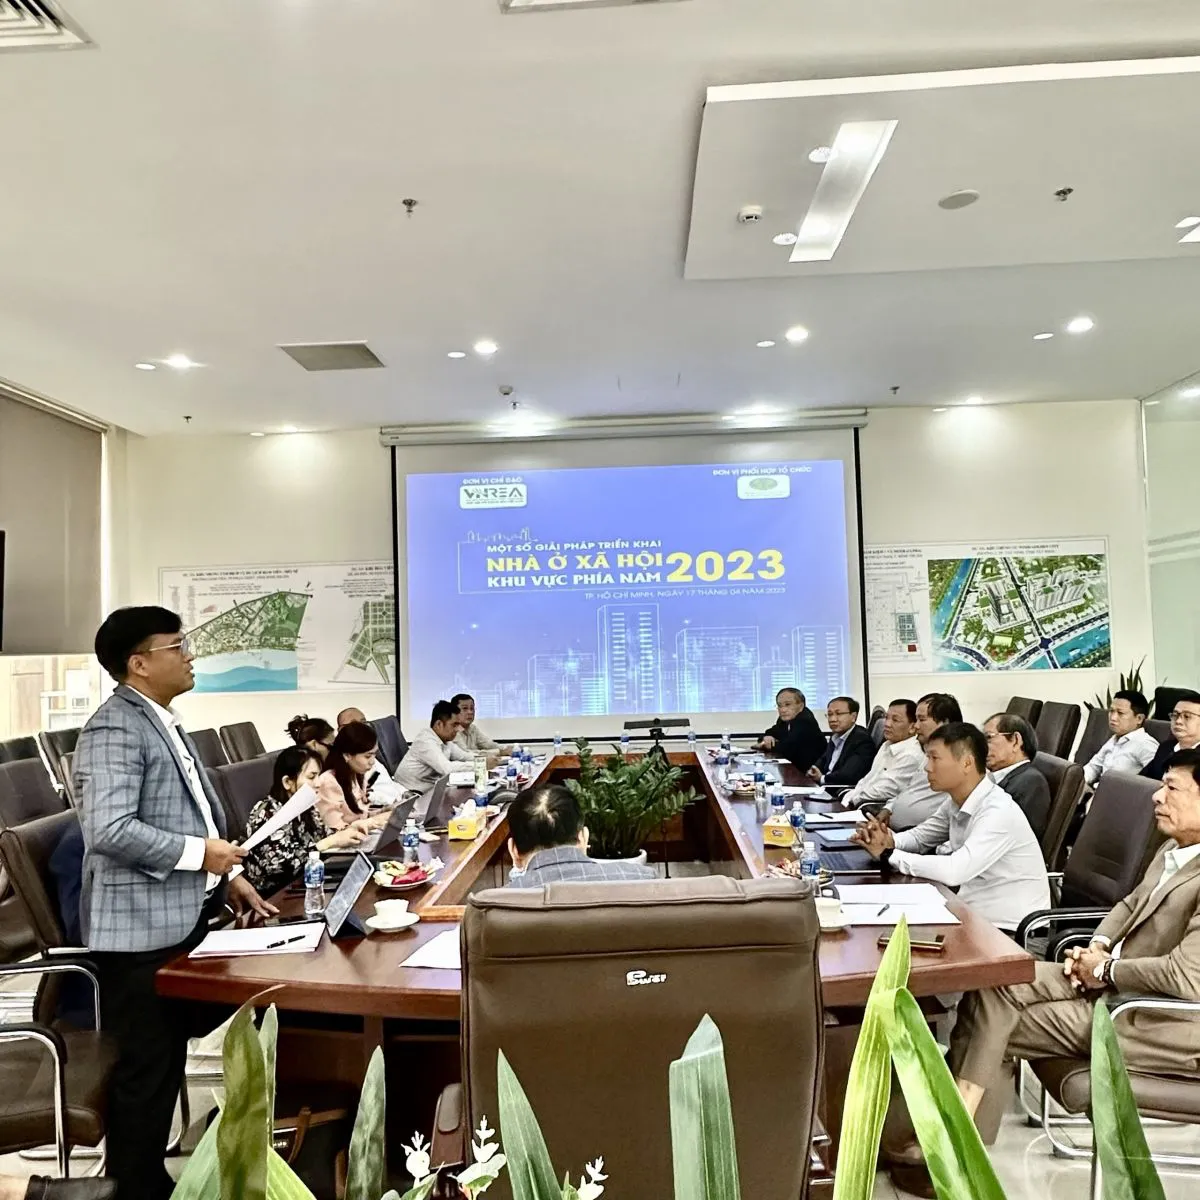 Tọa đàm thường niên đánh giá triển vọng thị trường chung cư Hà Nội 2023 - 2025 và Công bố báo cáo: Dự báo xu hướng phân khúc chung cư trung - cao cấp Hà Nội năm 2023.